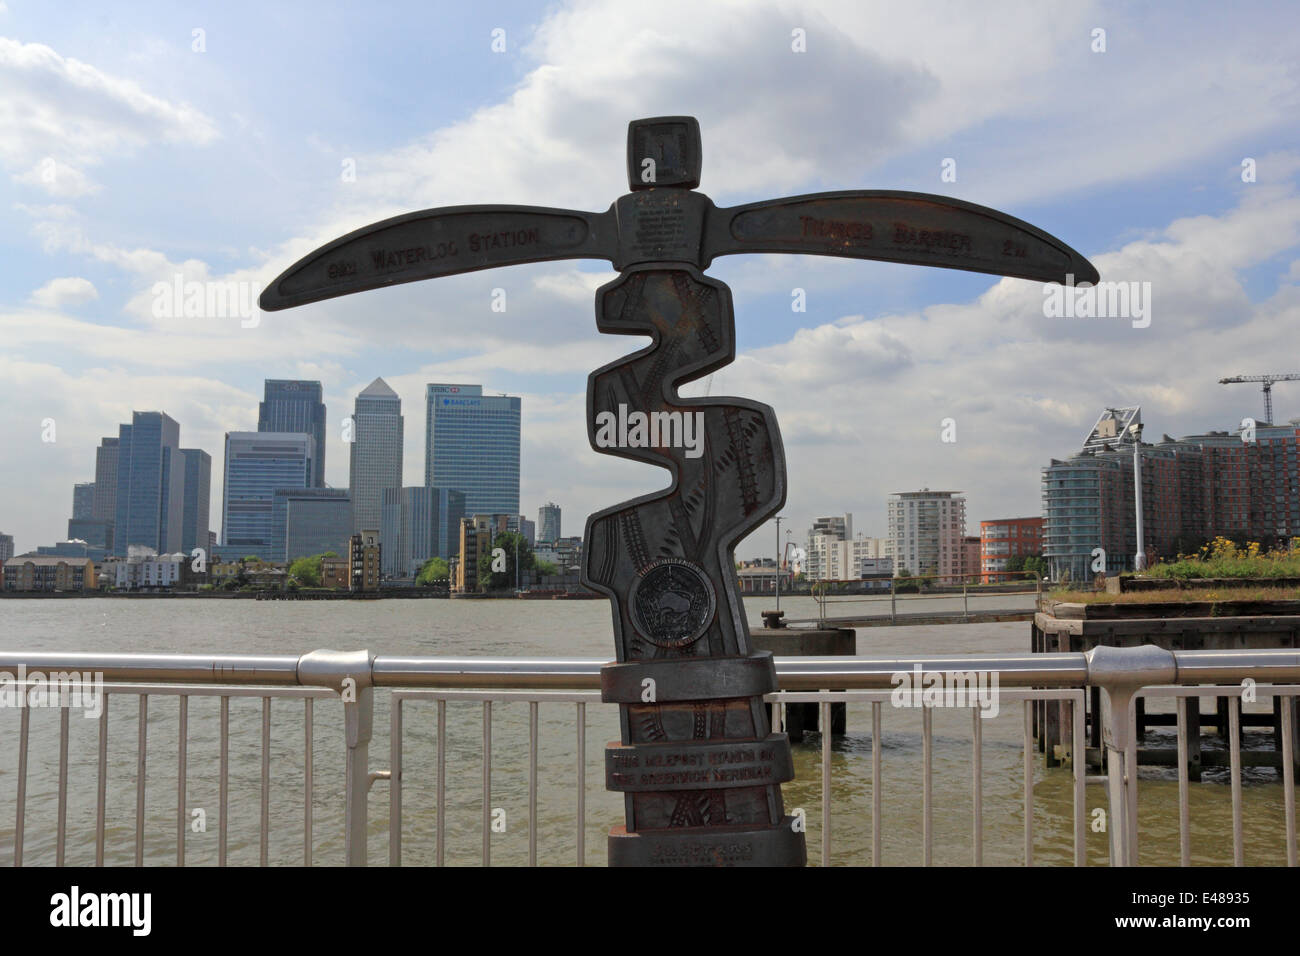 Meilenstein-stehend auf dem Greenwich-Meridian auf der Halbinsel Greenwich, London, England, UK. Stockfoto